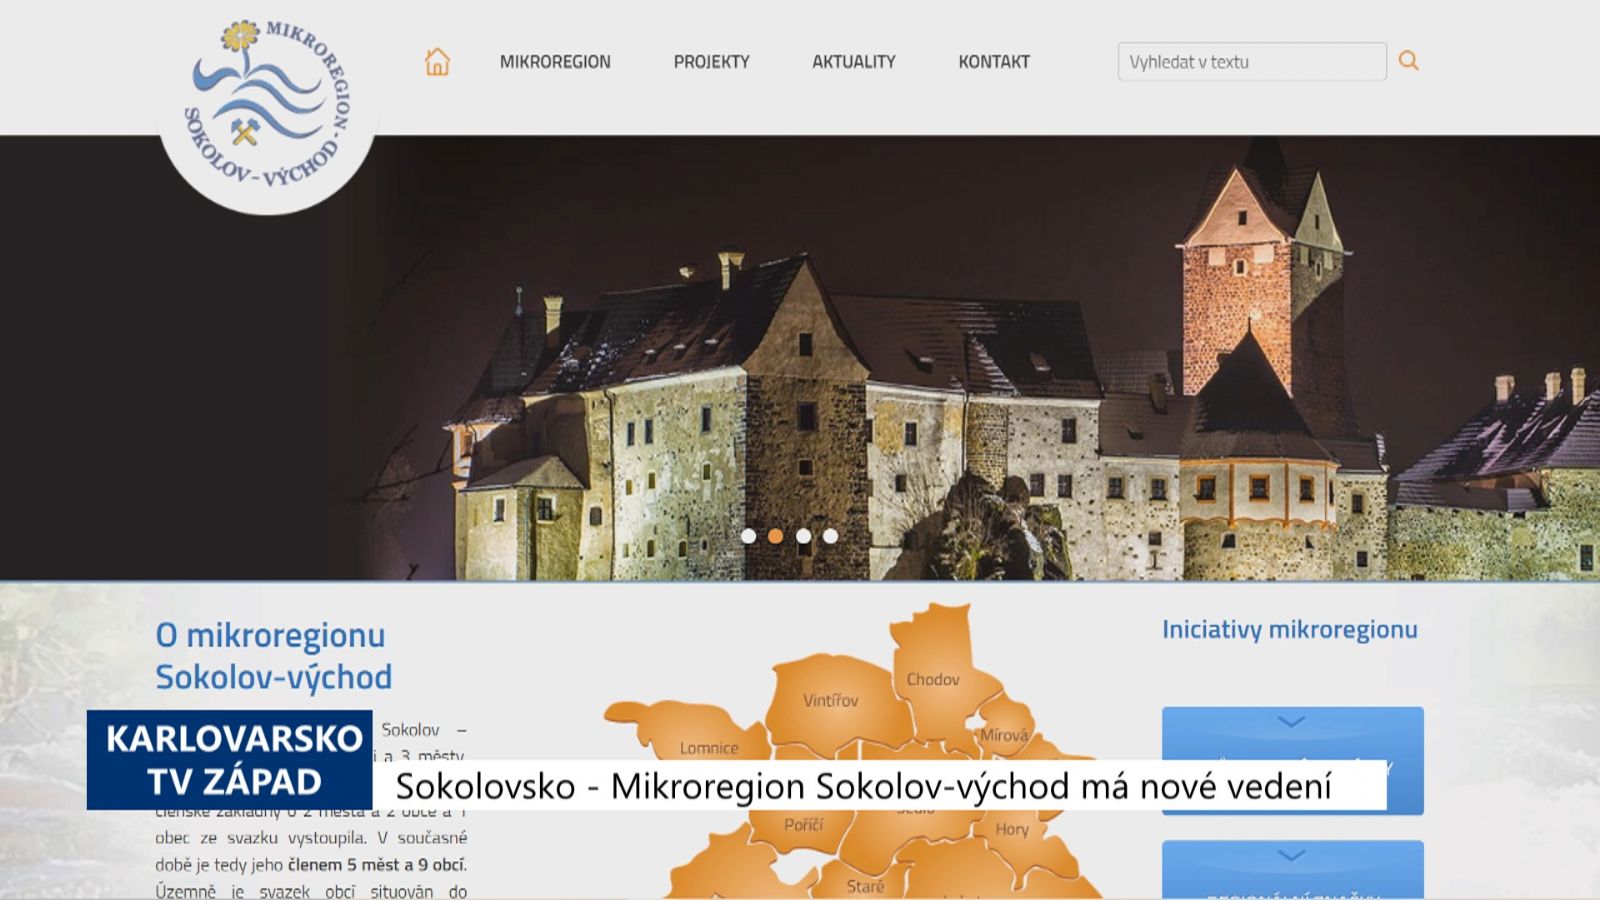 Sokolovsko: Mikroregion Sokolov-východ má nové vedení (TV Západ)